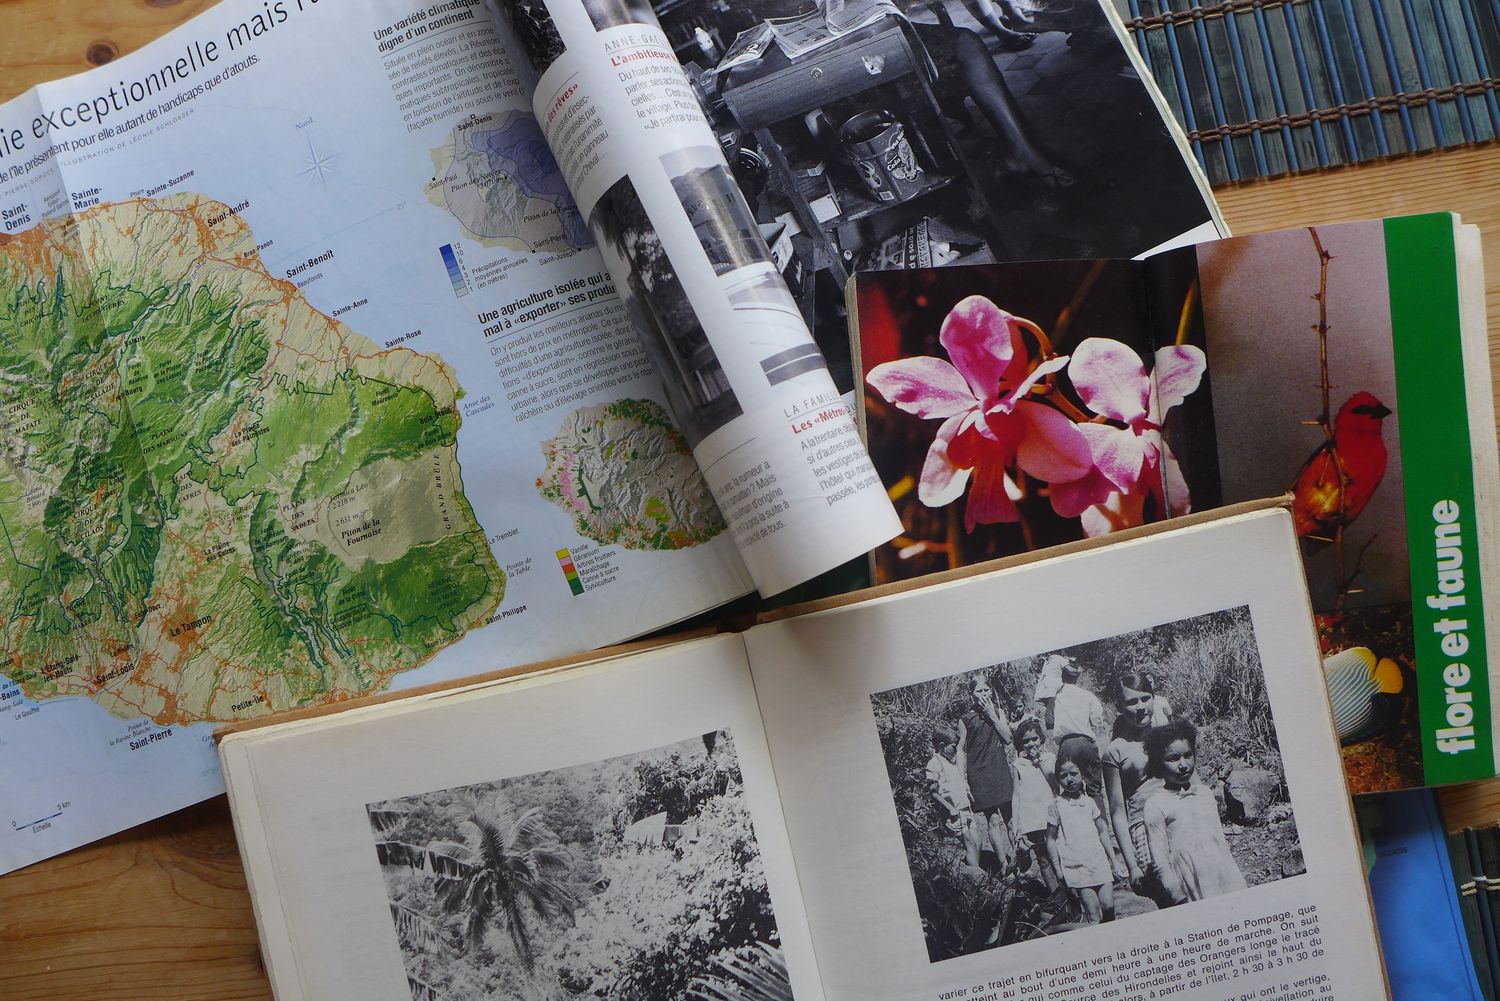 Ginette aime beaucoup lire. Elle aime aussi s’instruire sur l’histoire de son île. Elle possède plusieurs livres sur l’histoire réunionnaise. 